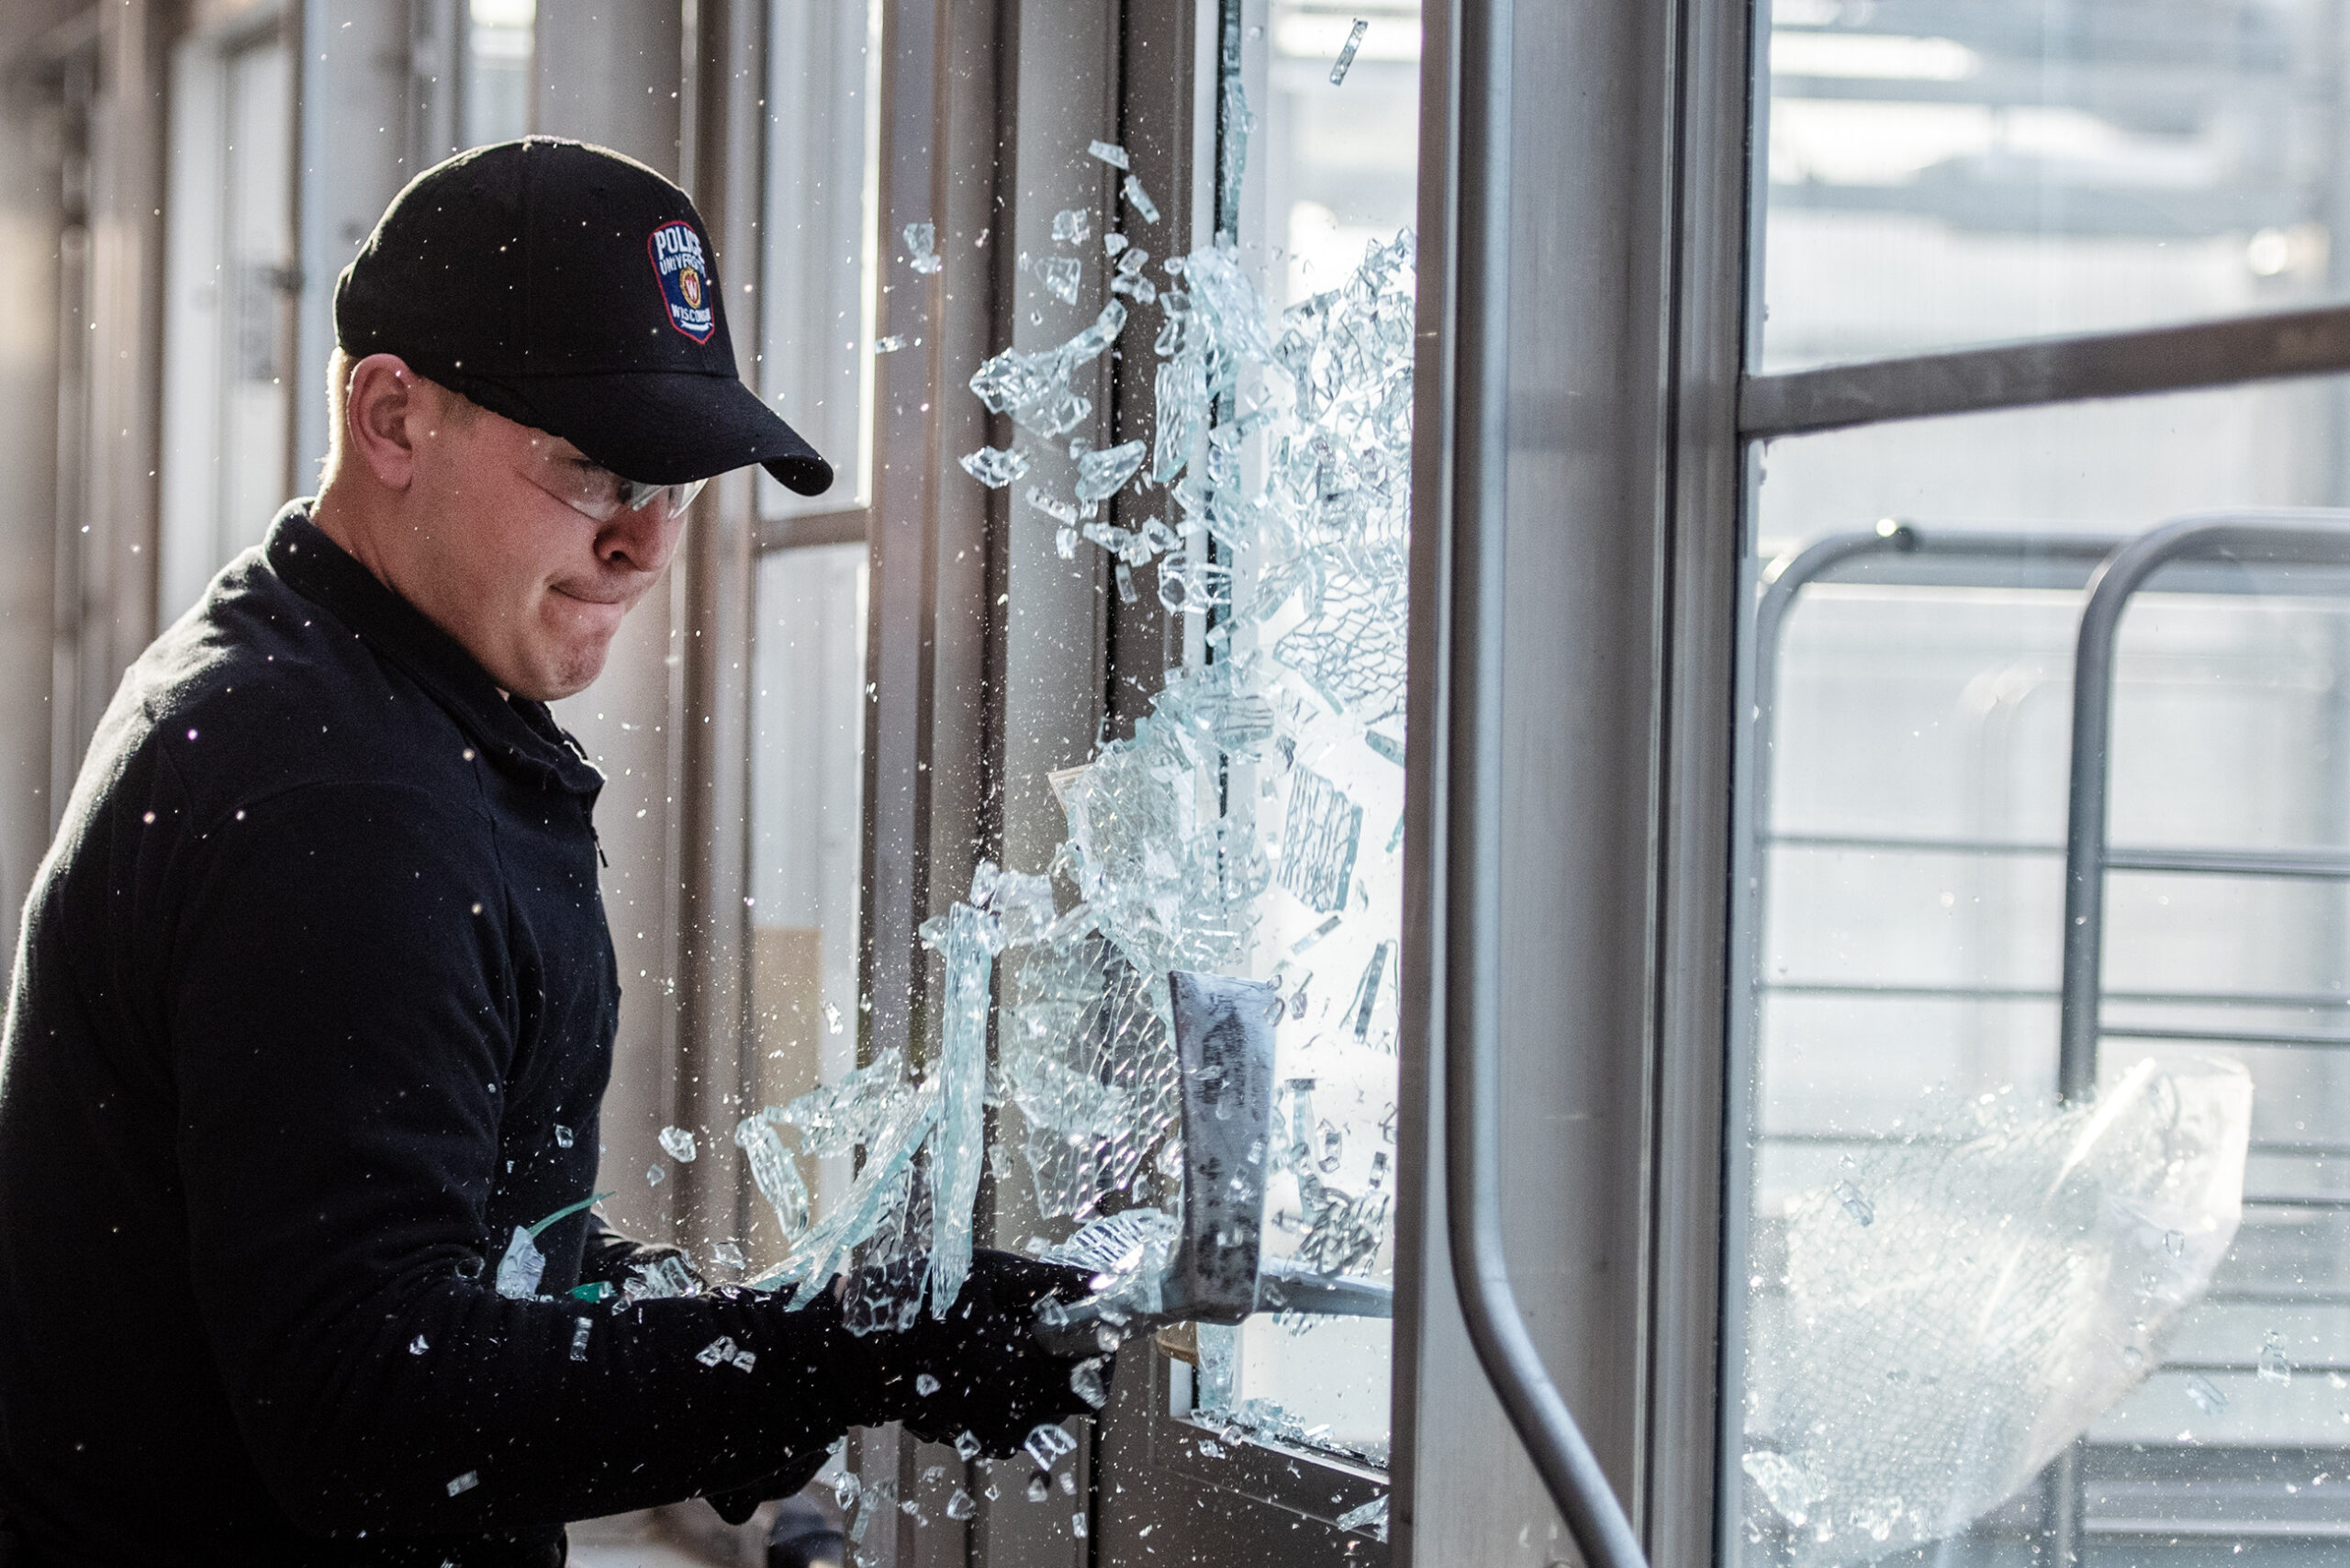 Broken glass flies as an officer uses a tool to break through a door window.